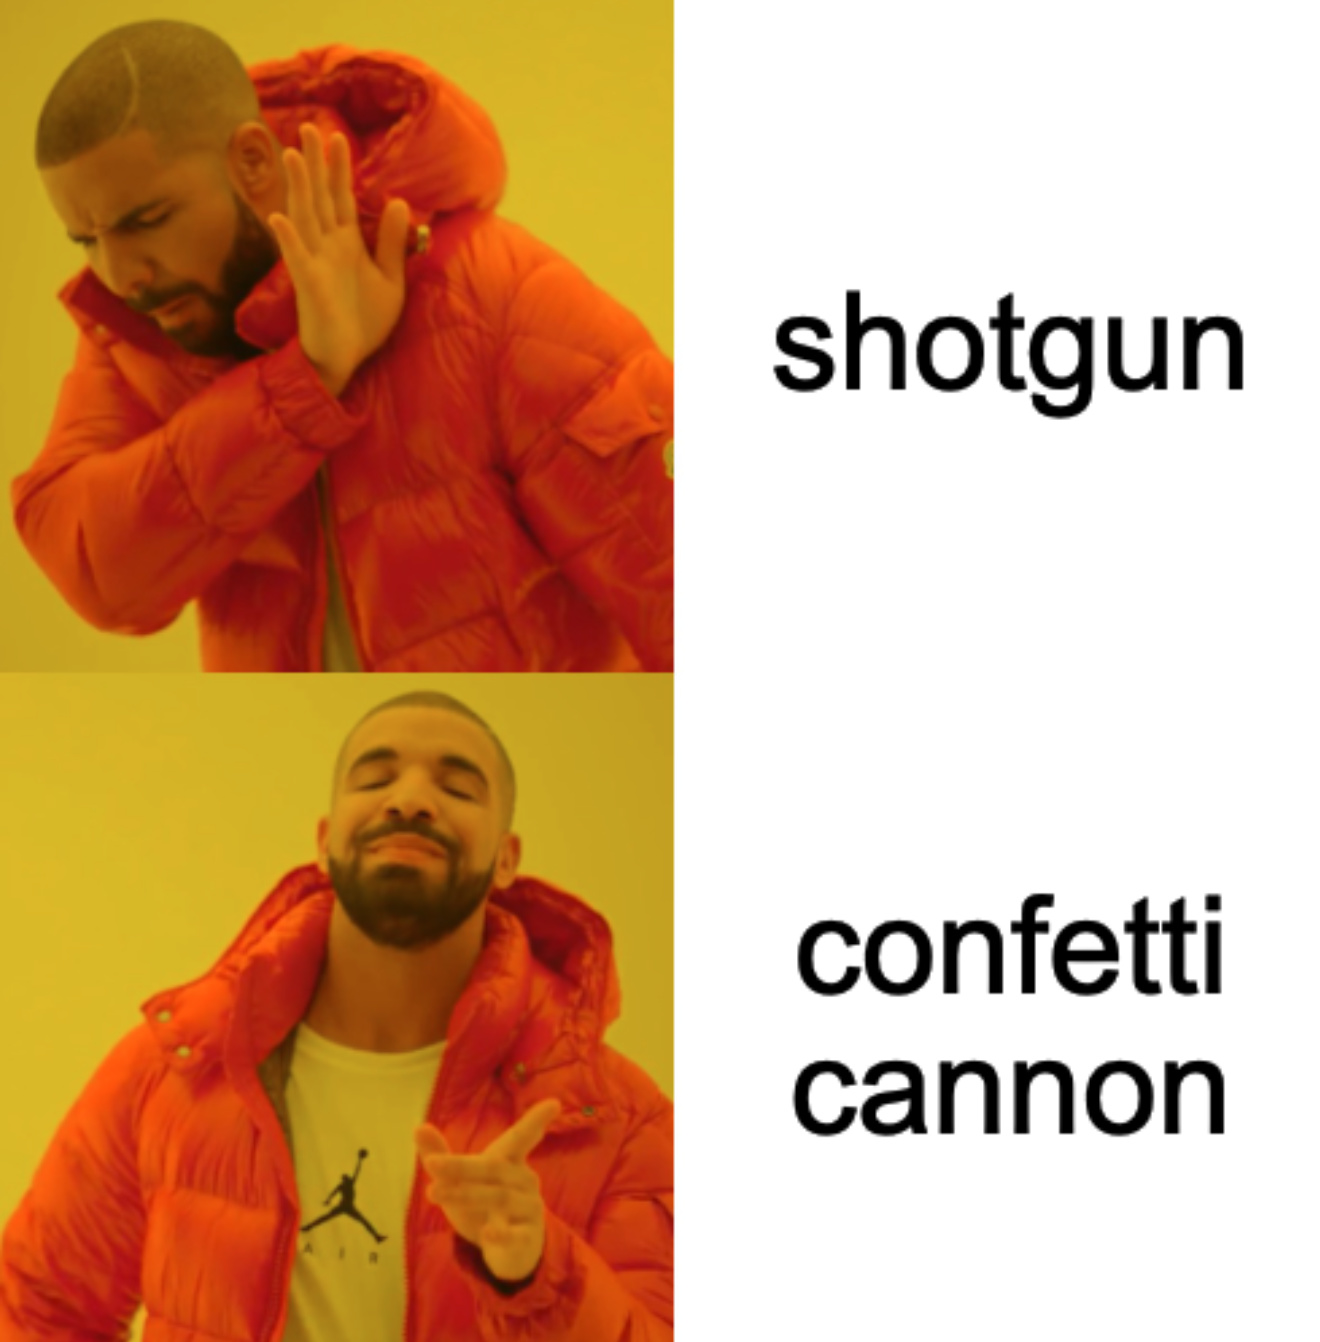 shotguns in fps games be like - meme